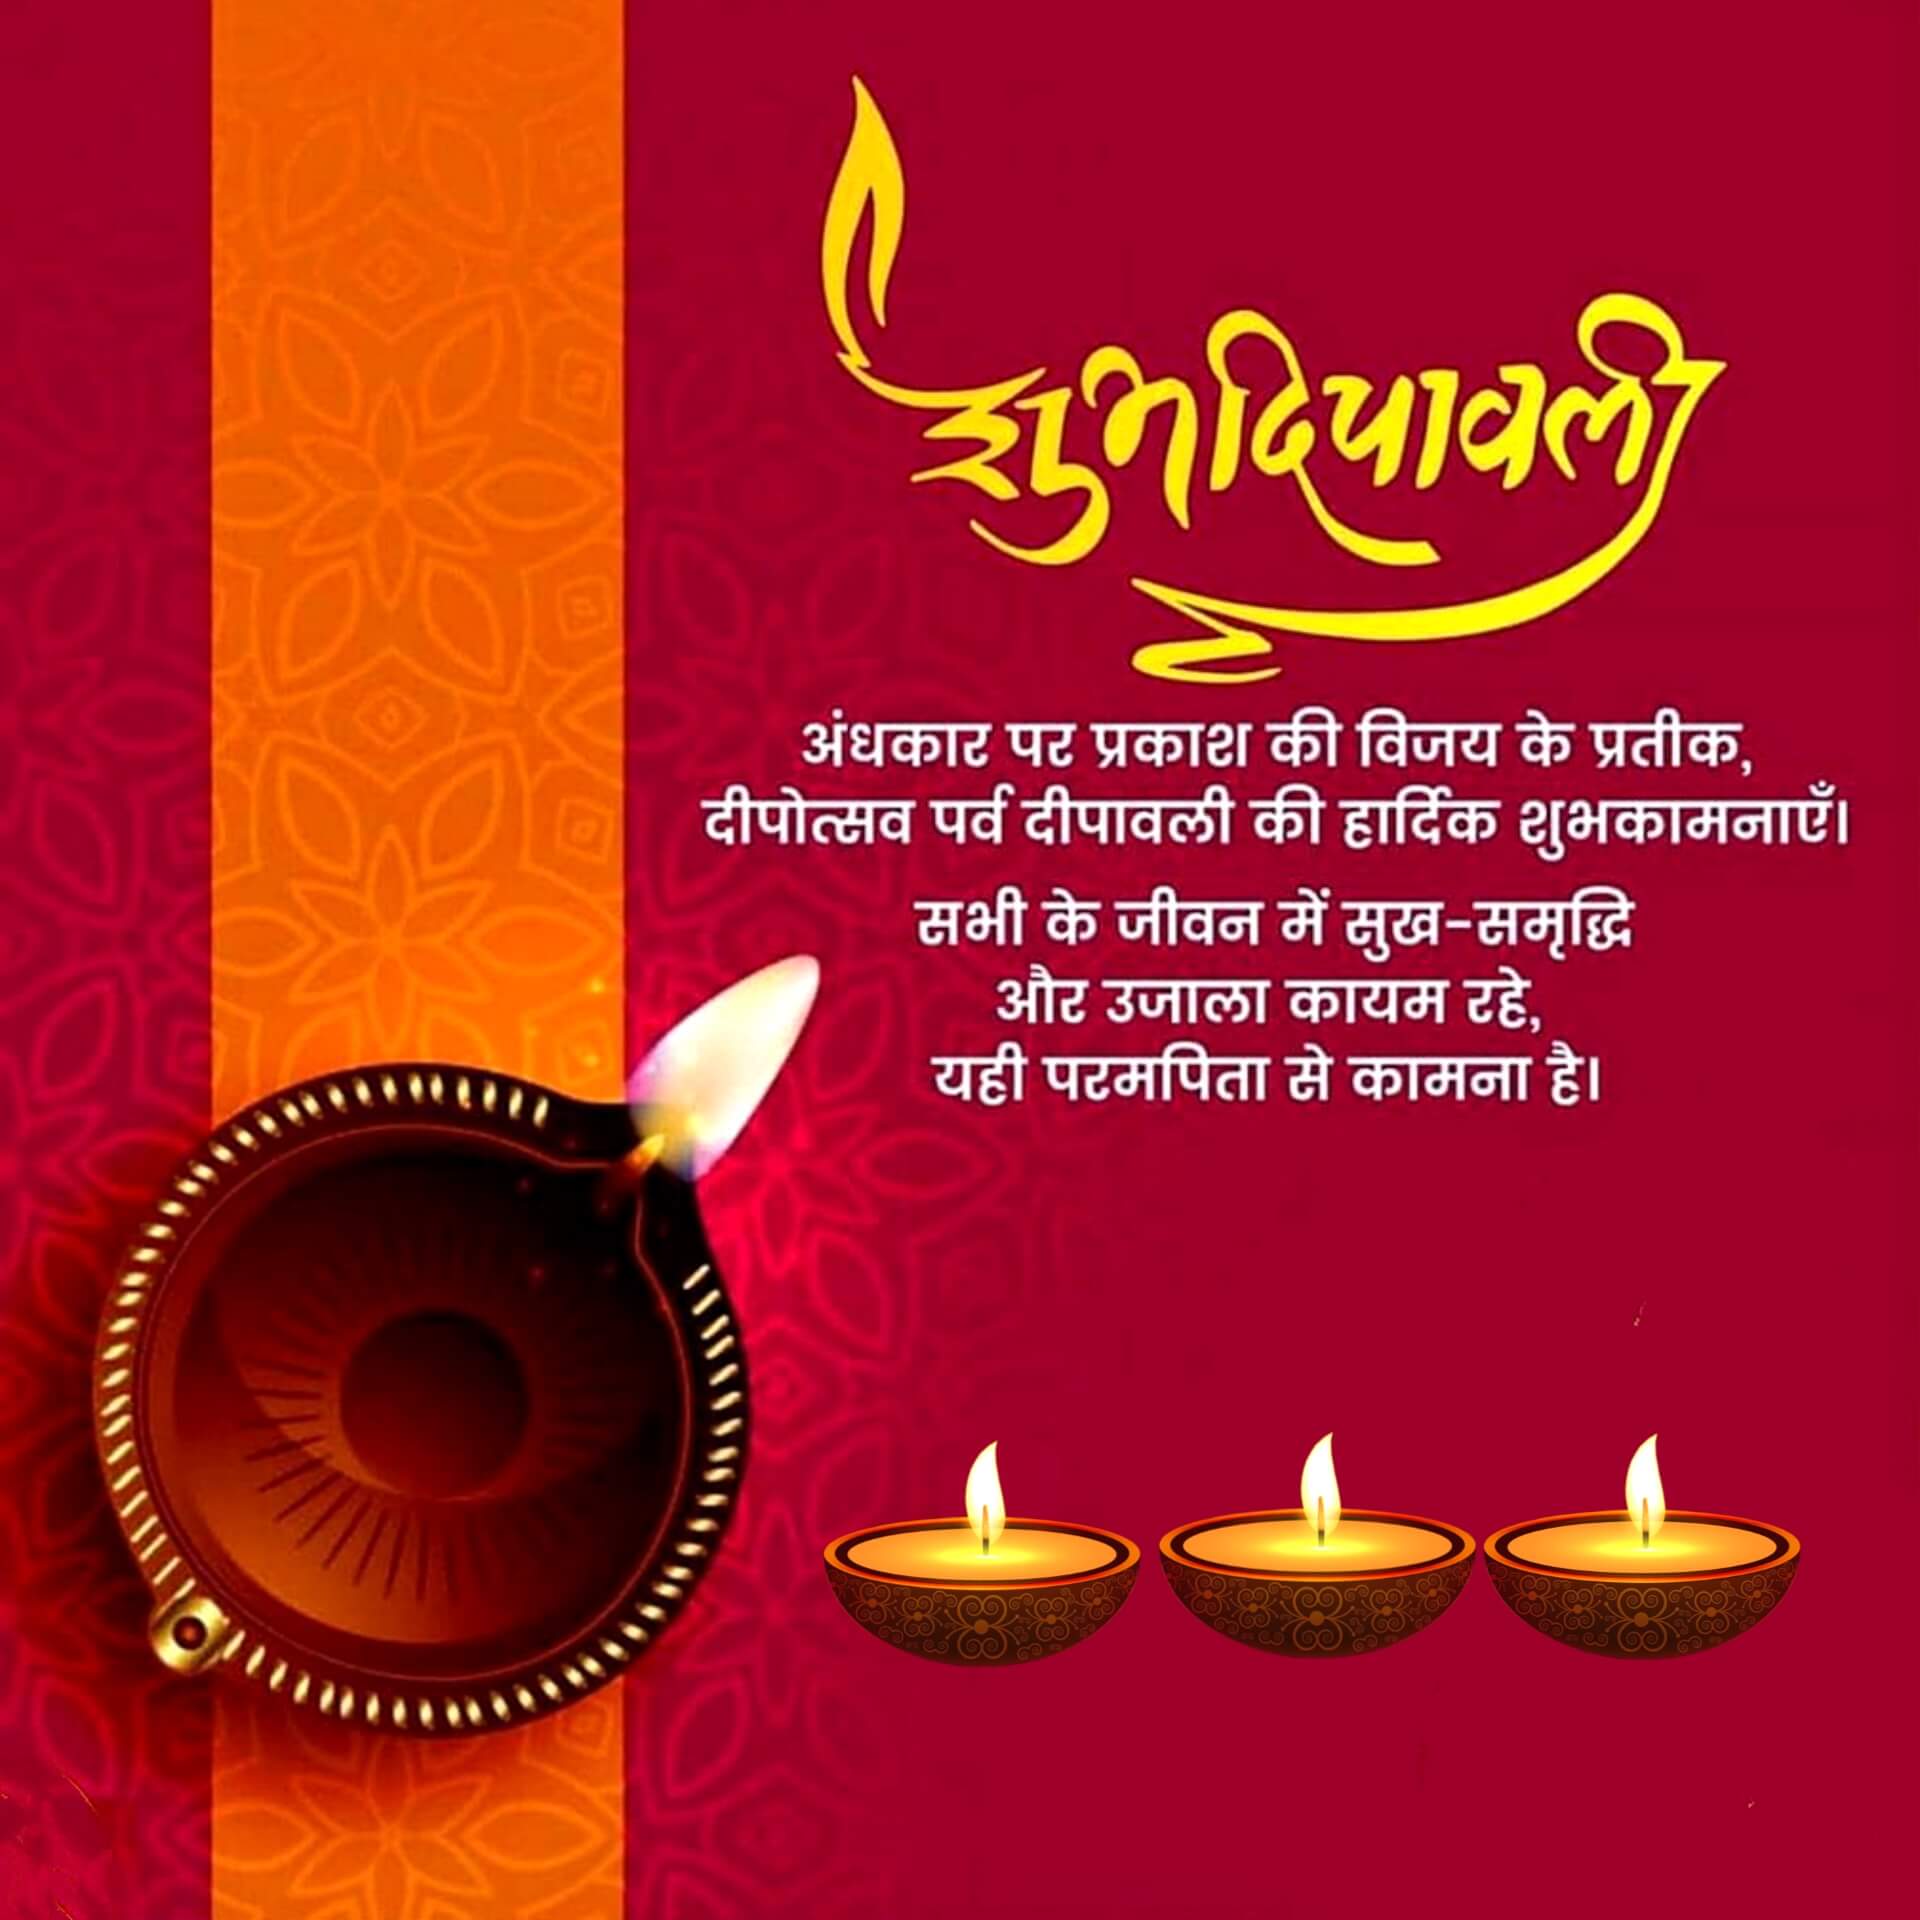 Hindi Diwali Wishes